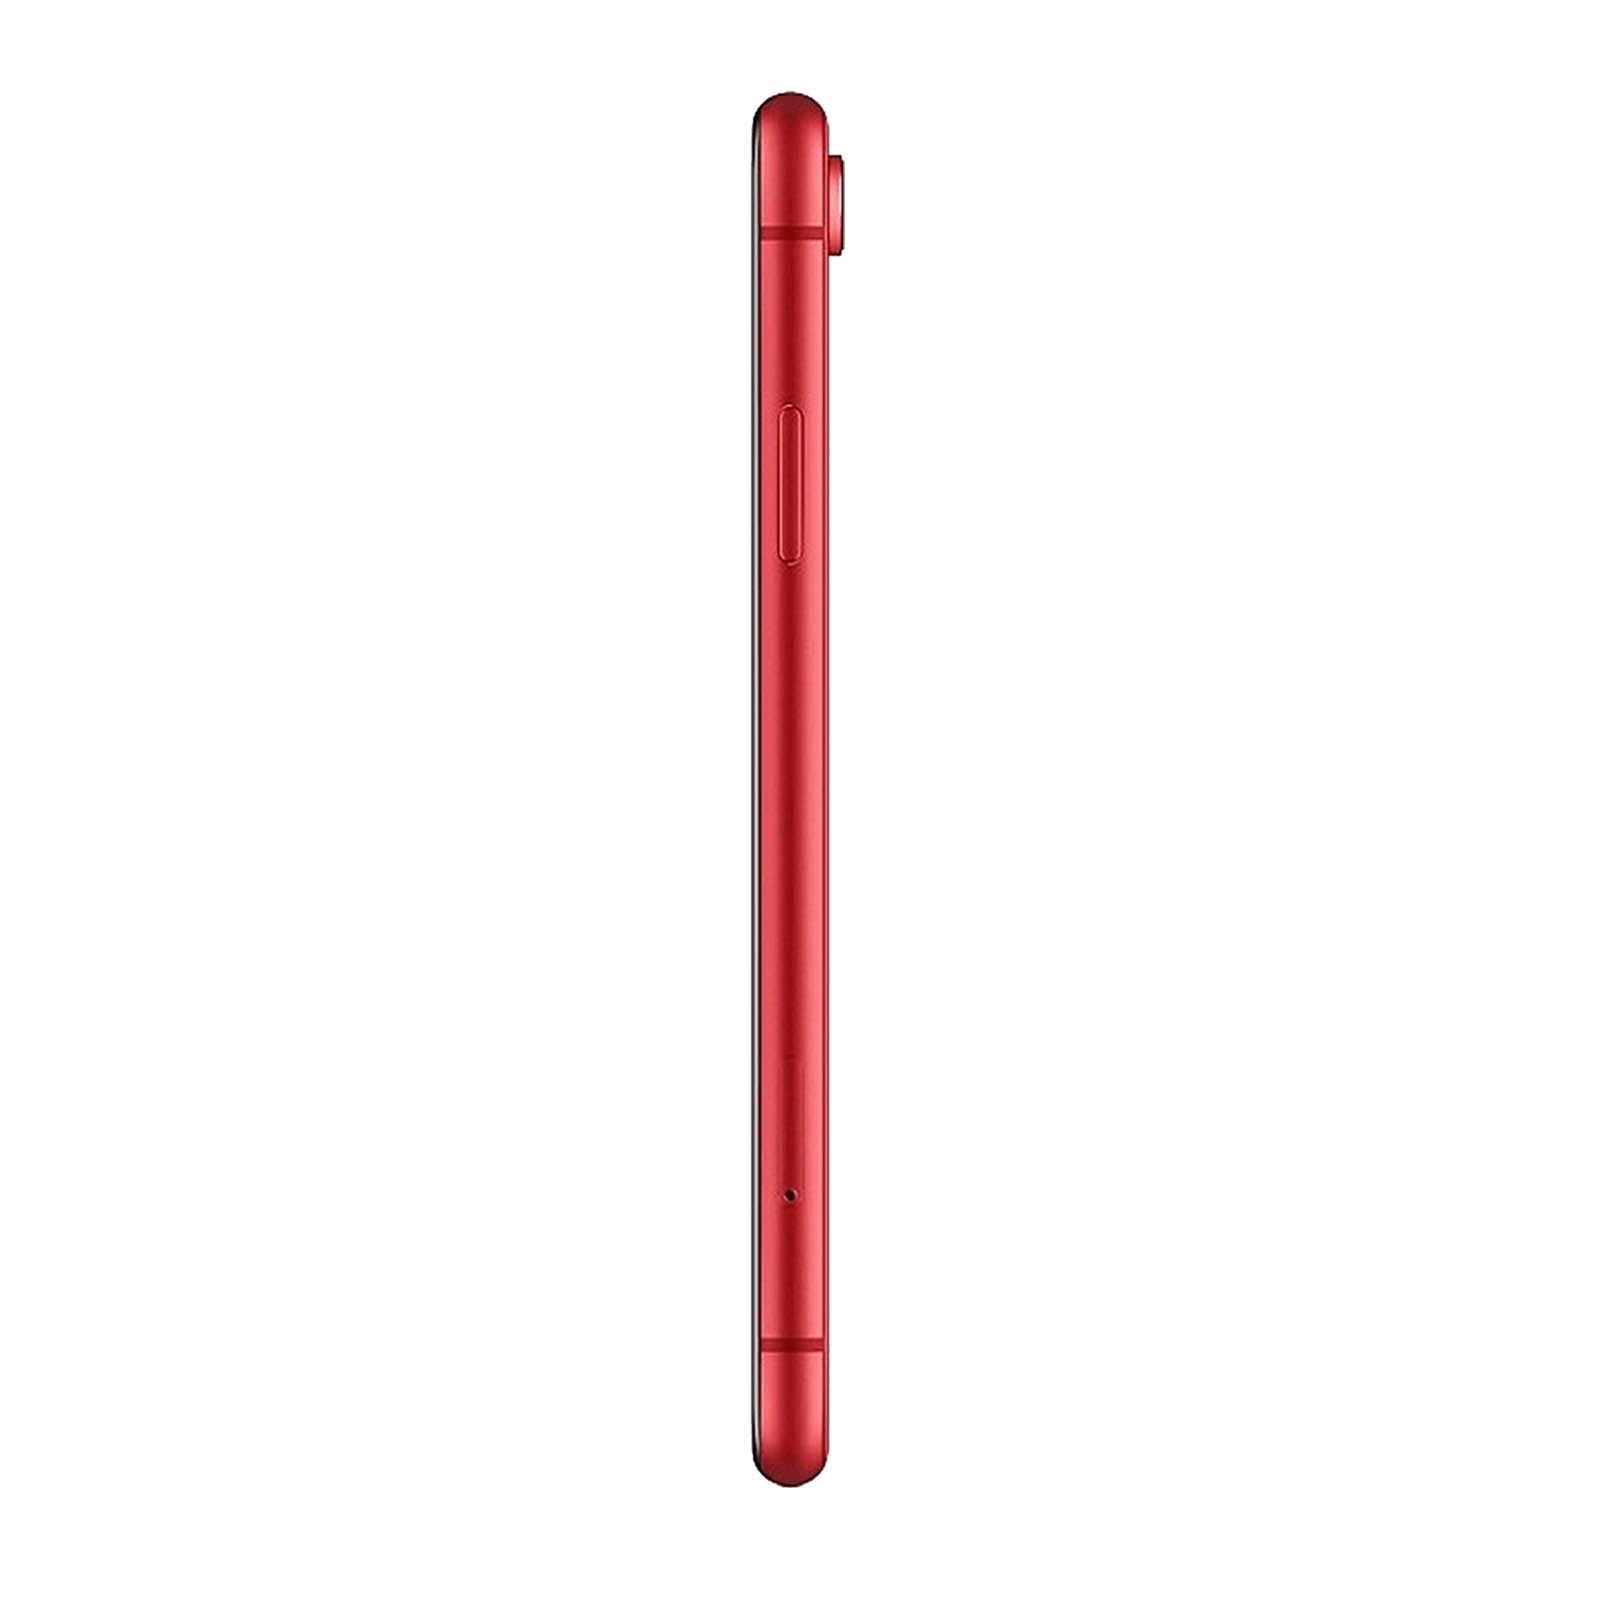 iPhone XR 128 Go - Product Red - Débloqué - Très Bon État